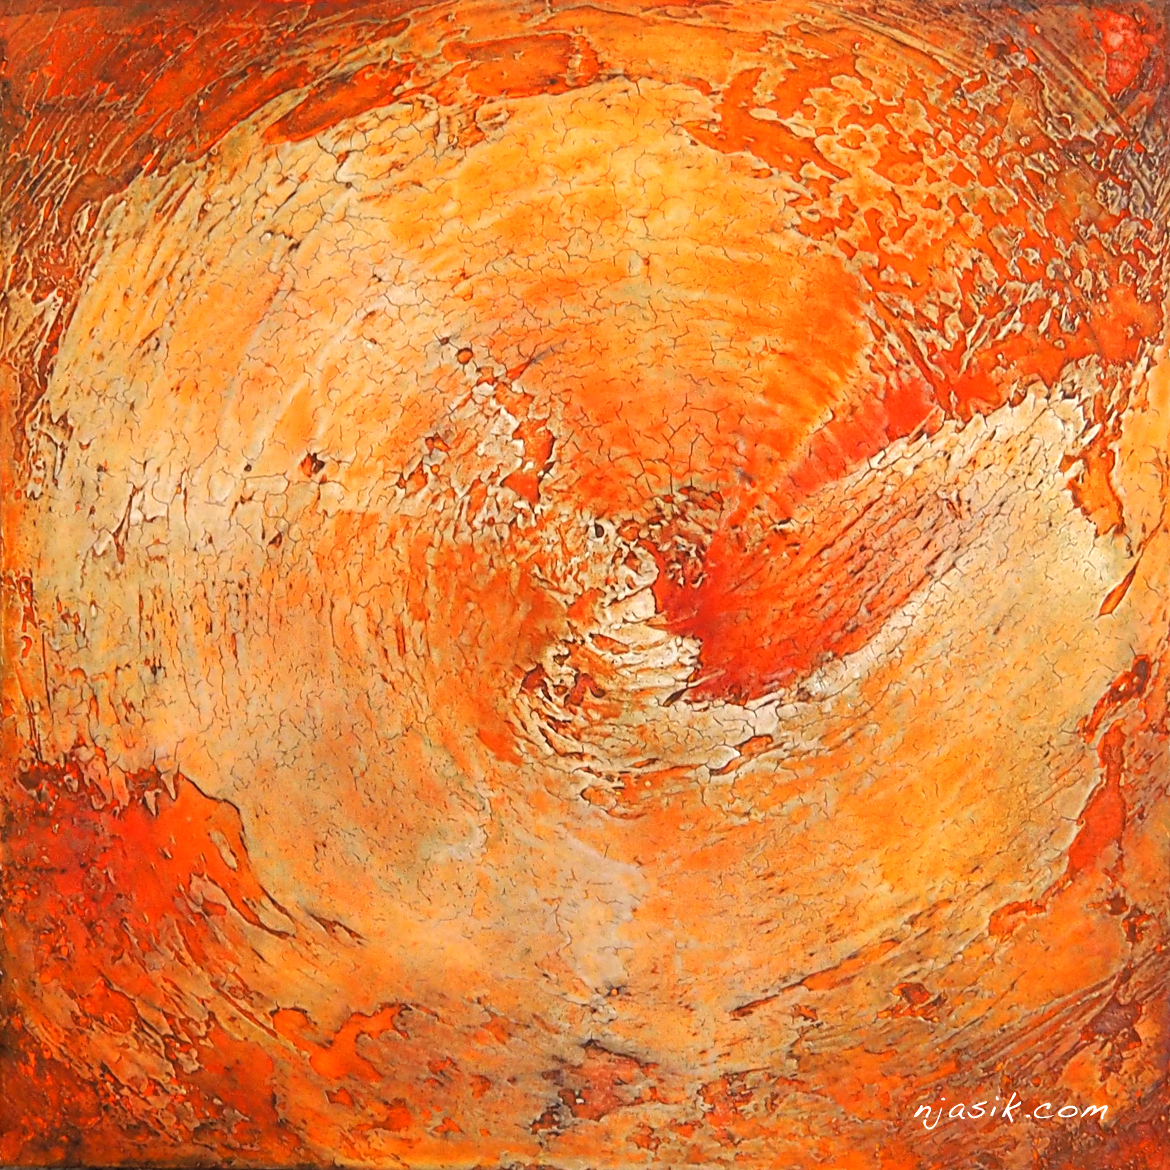 Orange spiral